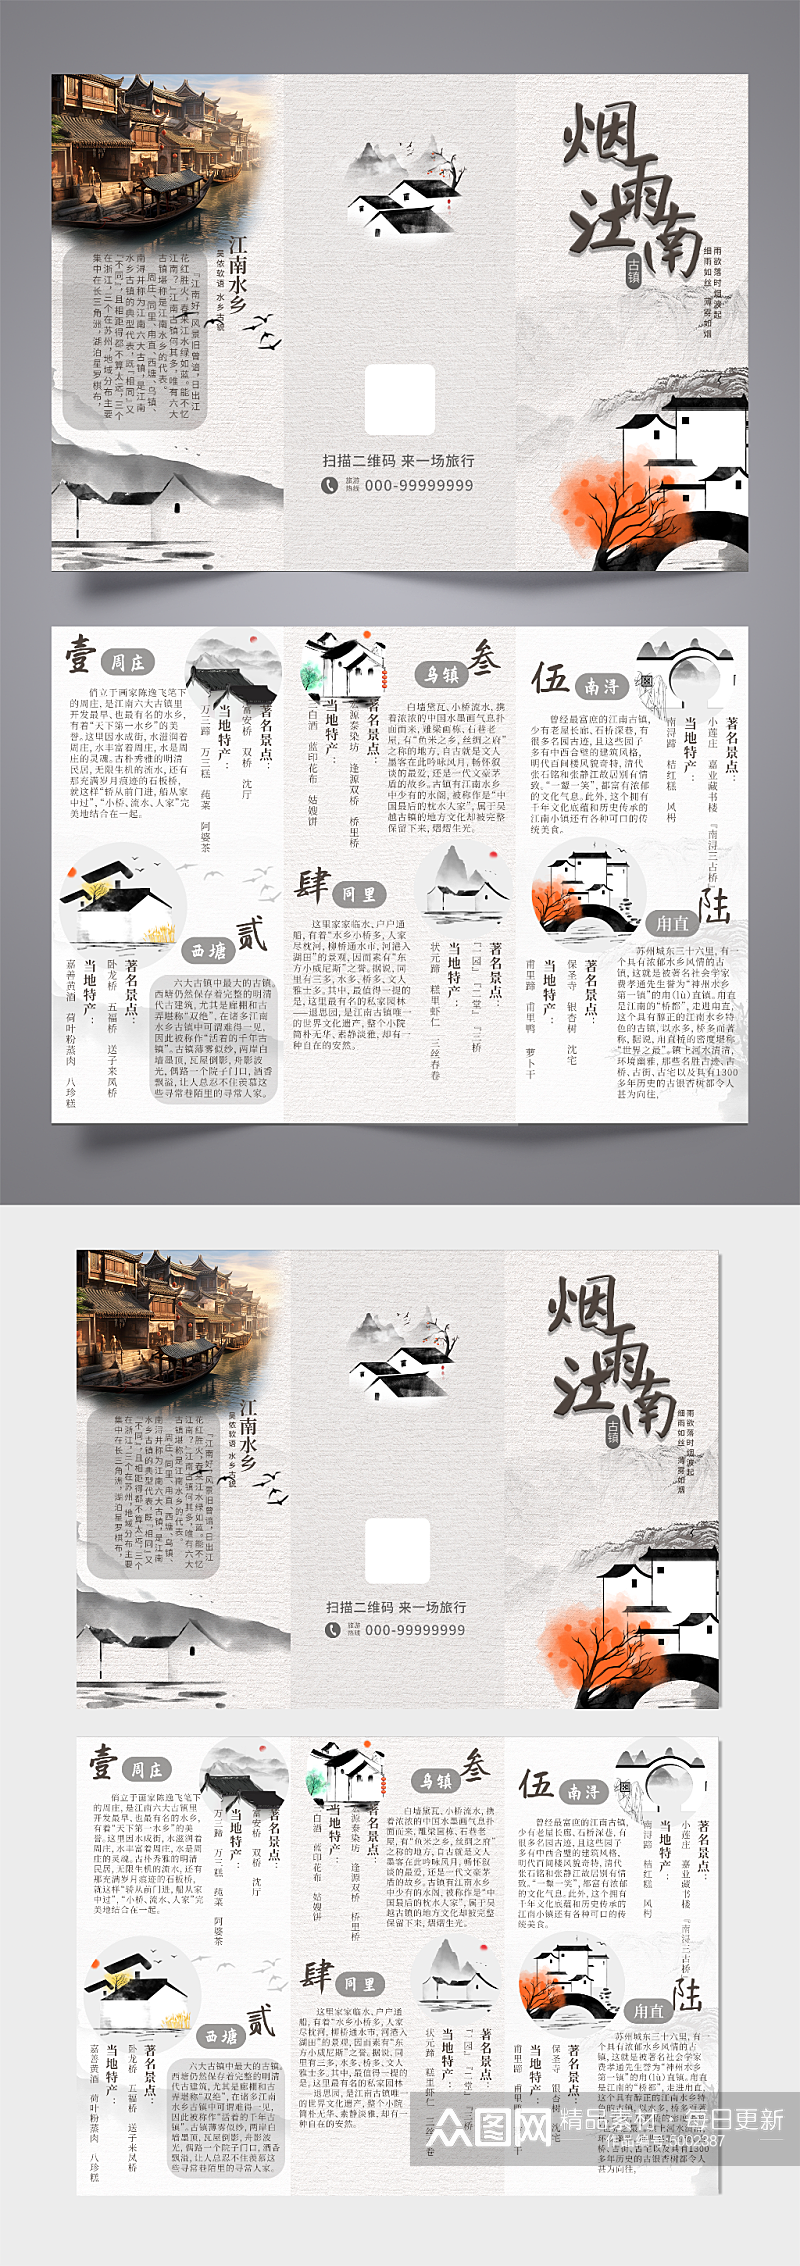 中国风古建筑古镇文化旅游宣传三折页素材